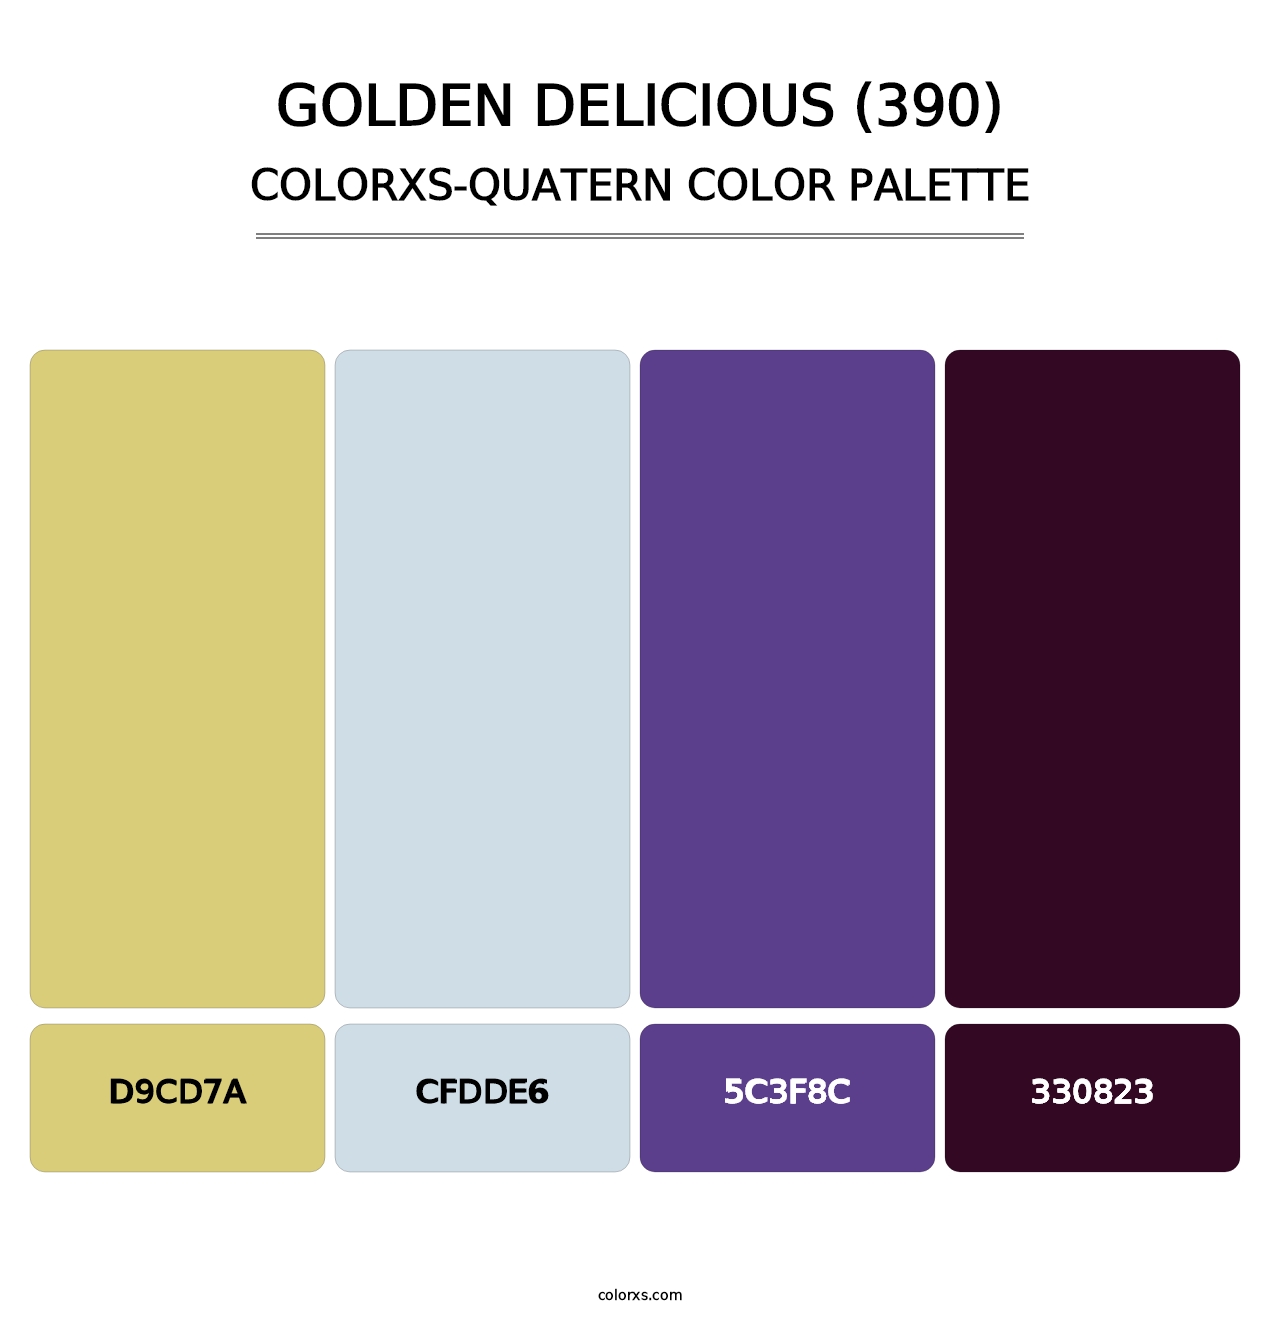 Golden Delicious (390) - Colorxs Quatern Palette